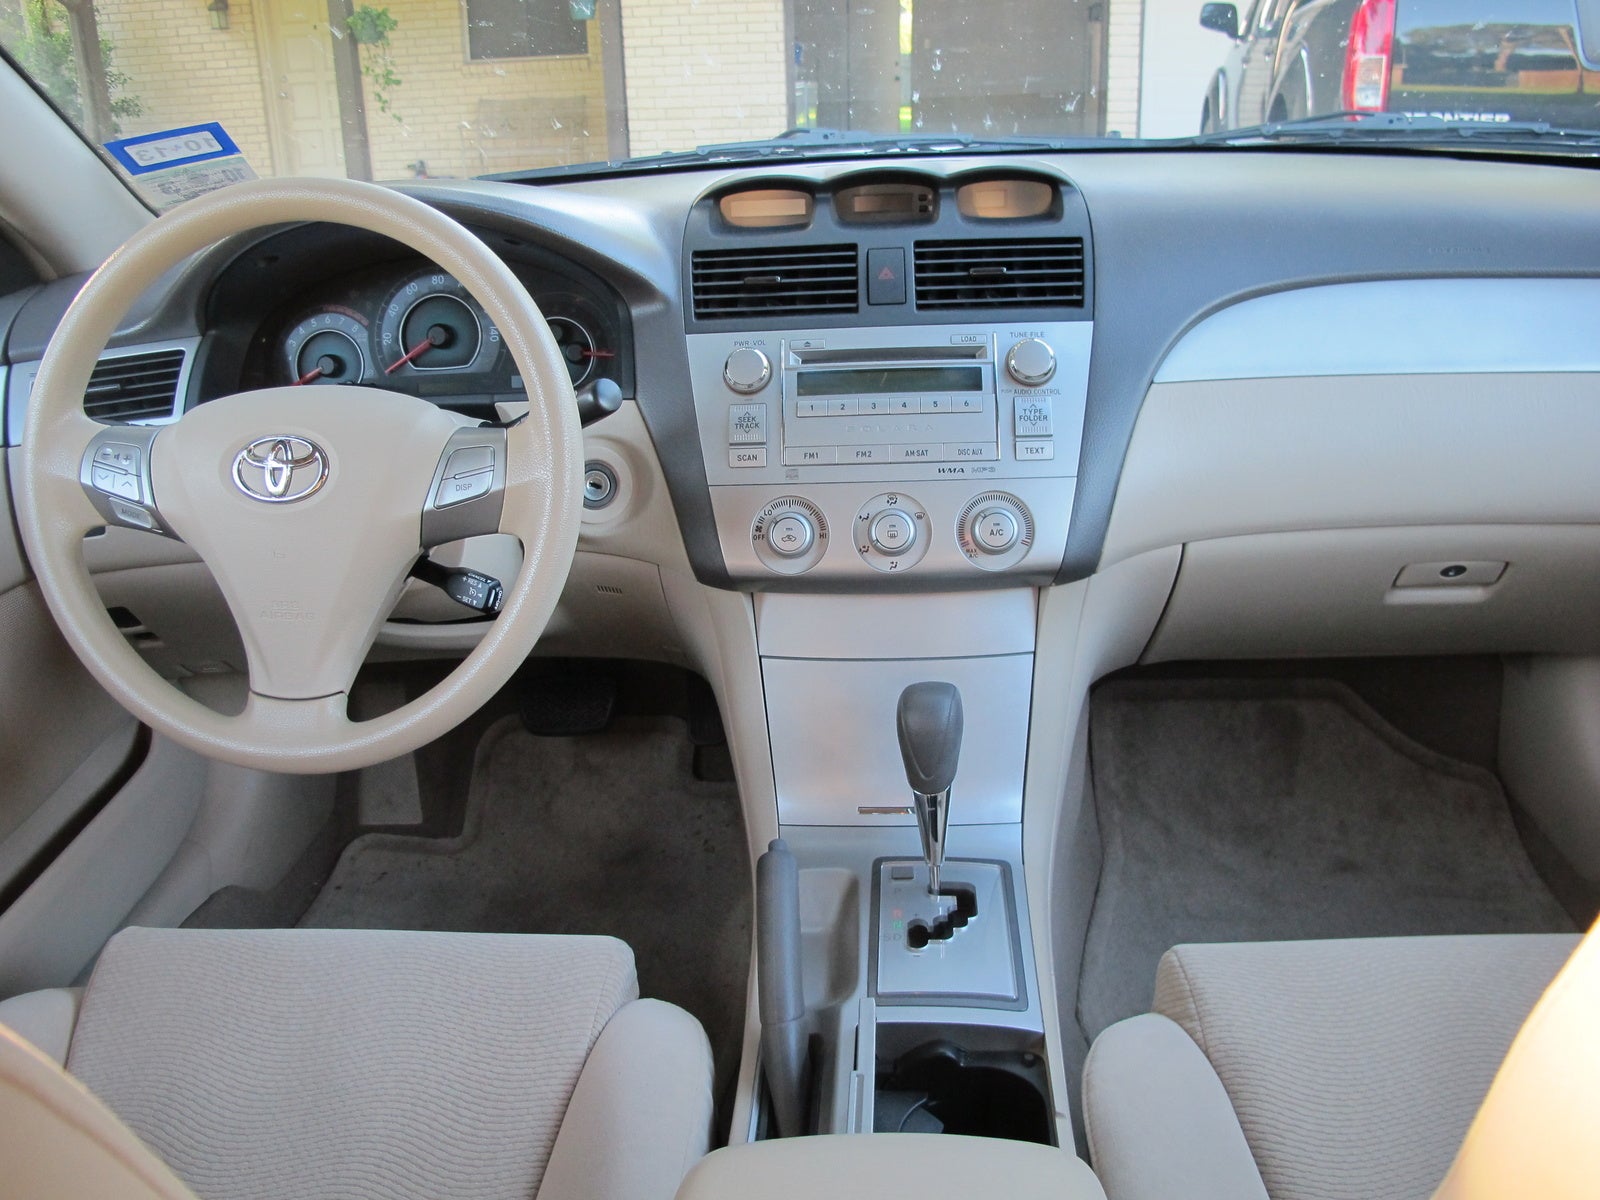 2007 Toyota Camry Solara - Interior Pictures - CarGurus